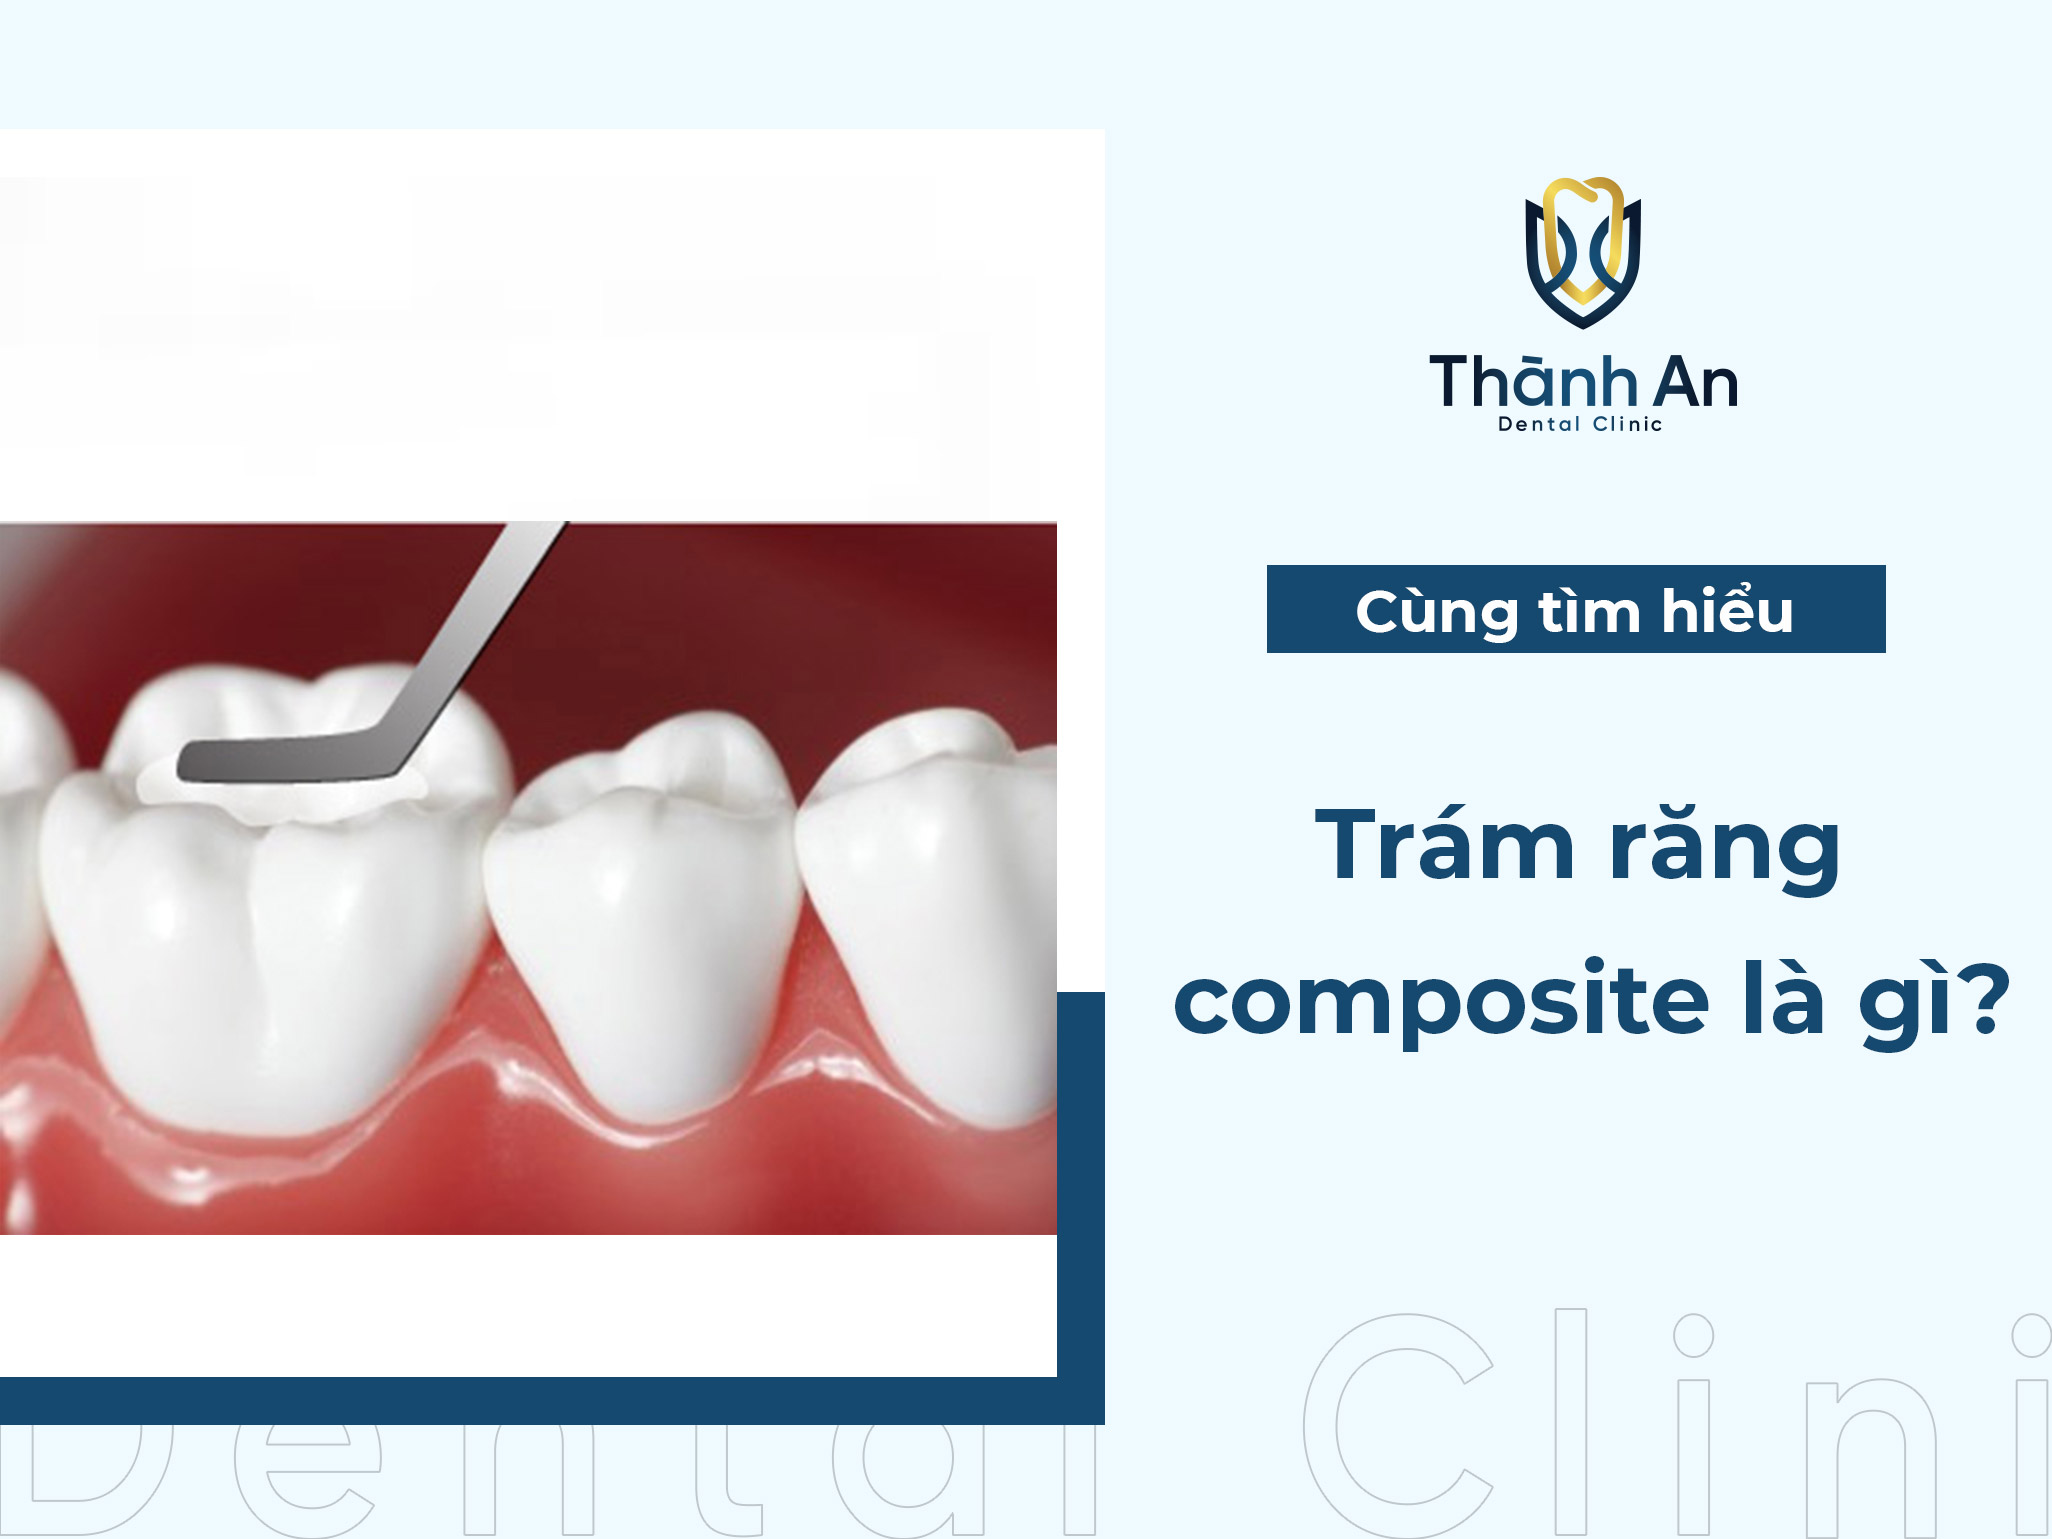 Trám răng composite là gì? những thông tin bạn nên biết 